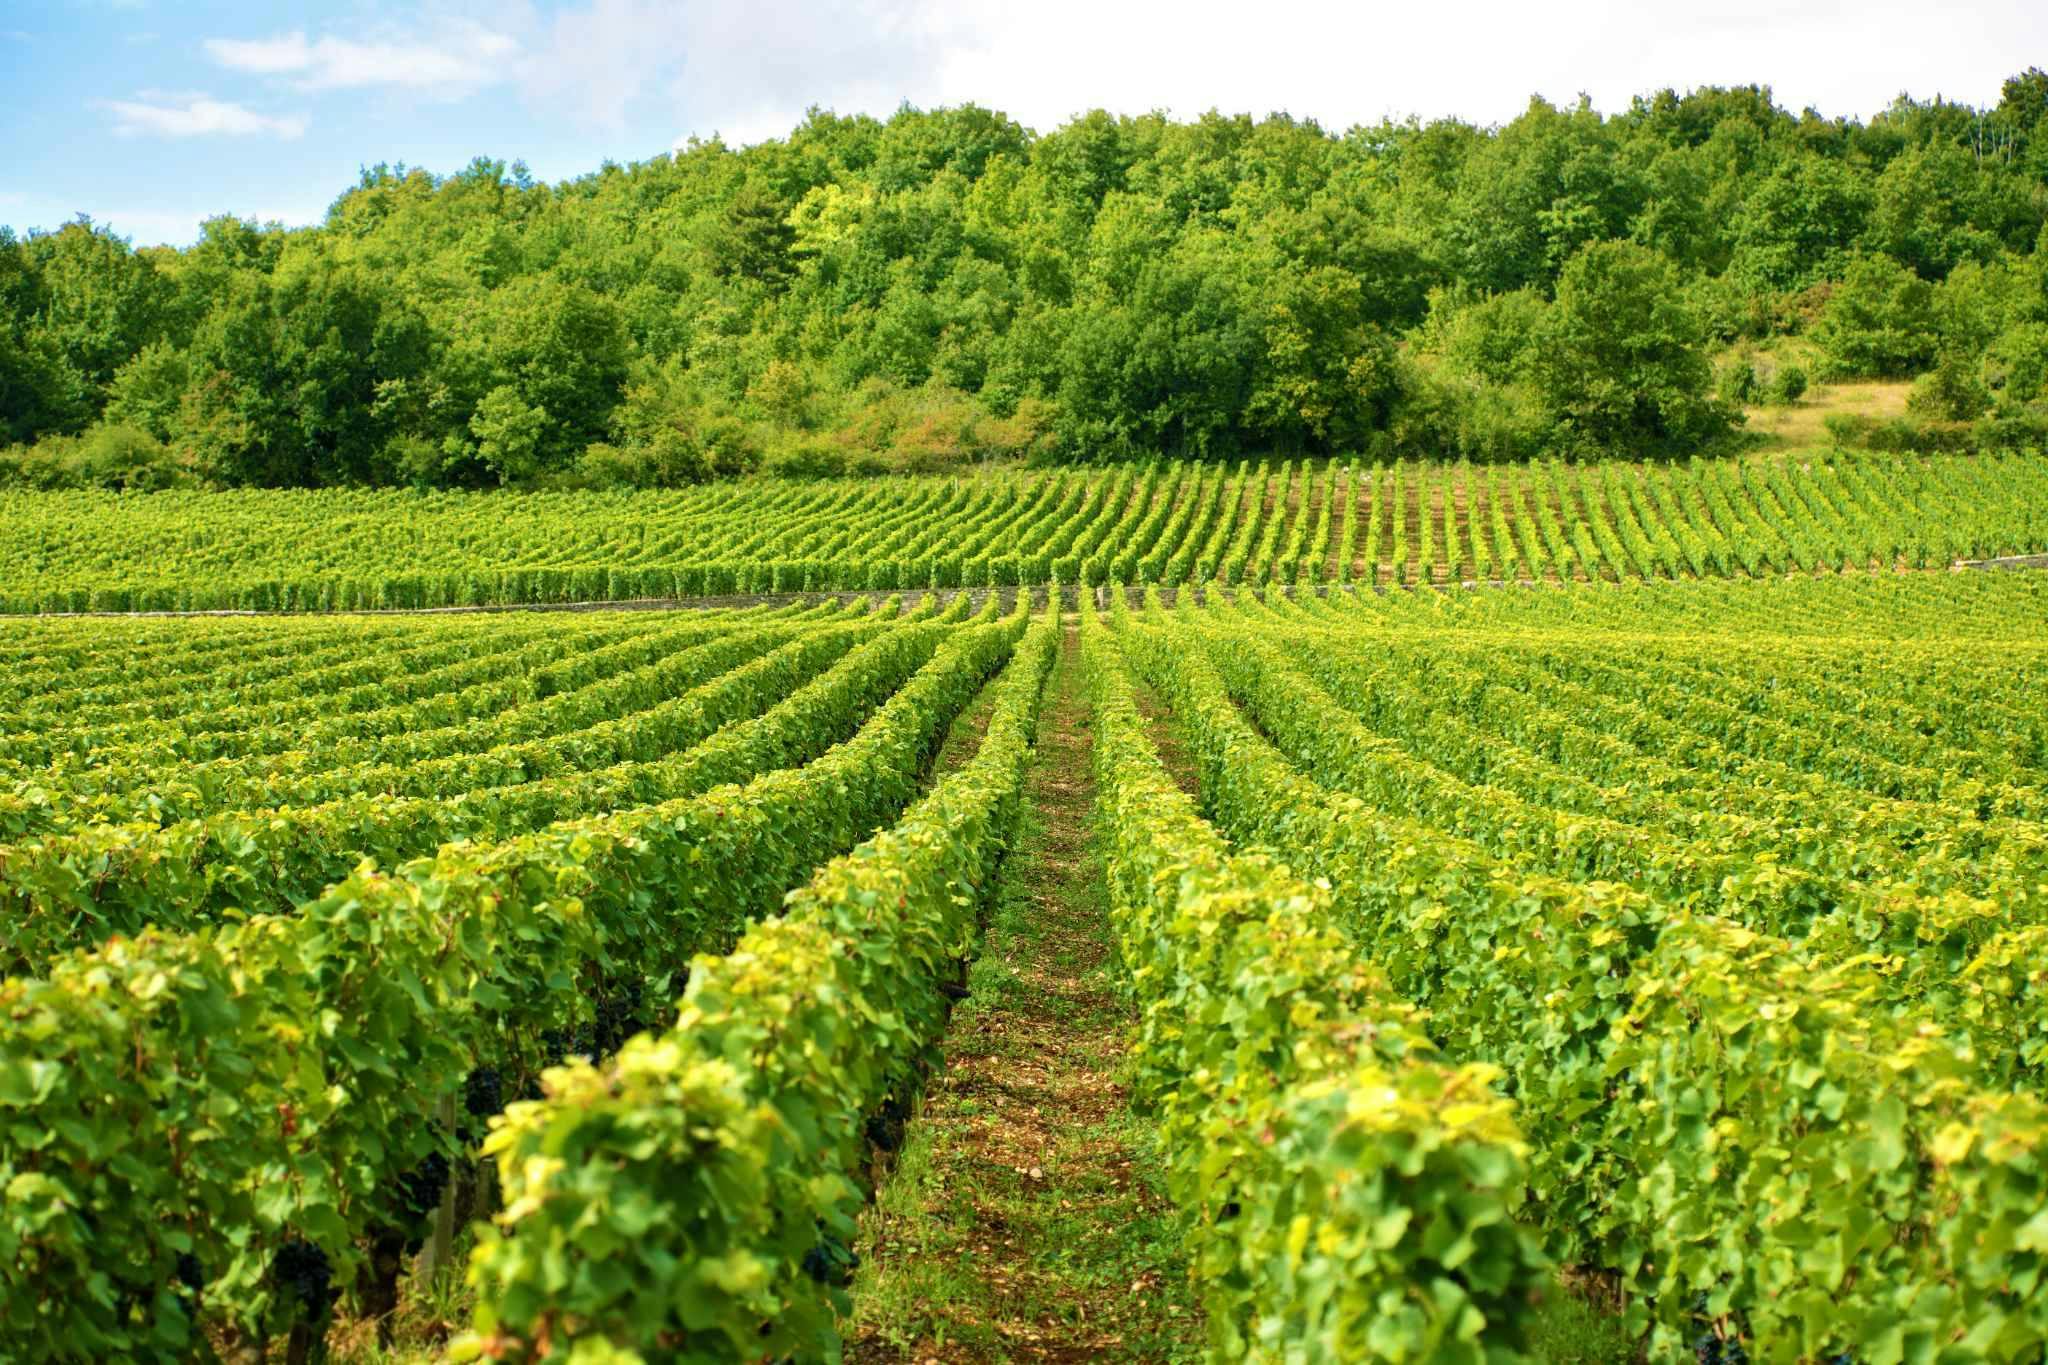 Life among the vineyards